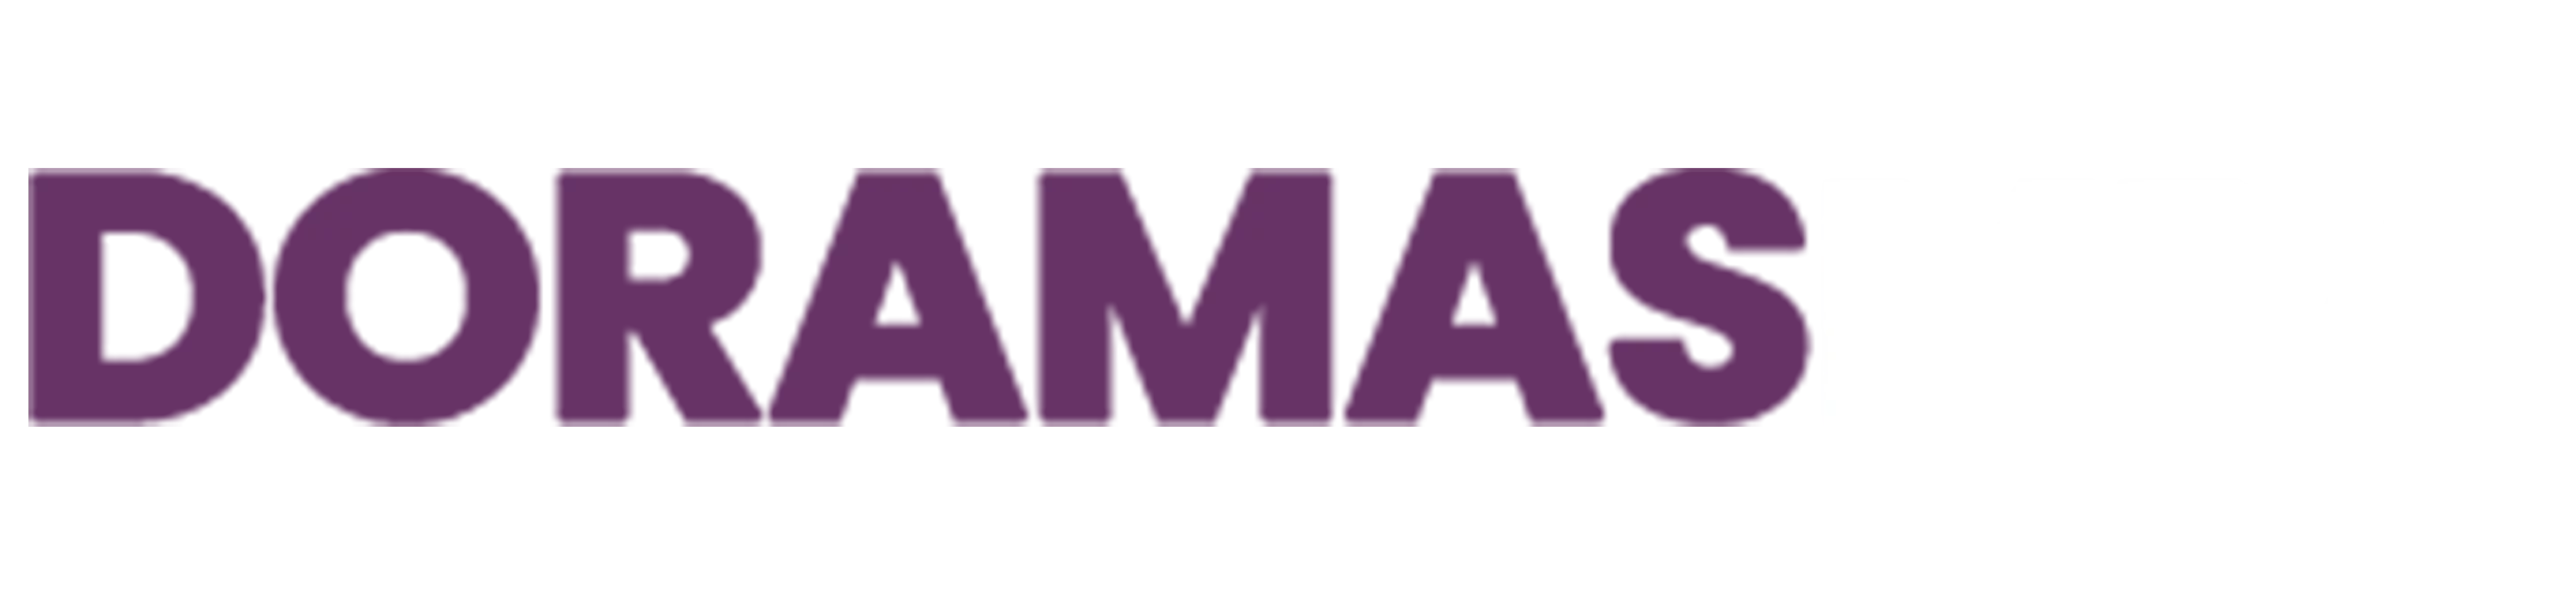 DoramasMp4 - En ✓ DoramasMP4 ✓ verás los ➤ doramas online ➤ gratis en emisión y finalizados en HD. Dramas Coreanos, chinos, tailandeses y japoneses en MP4.